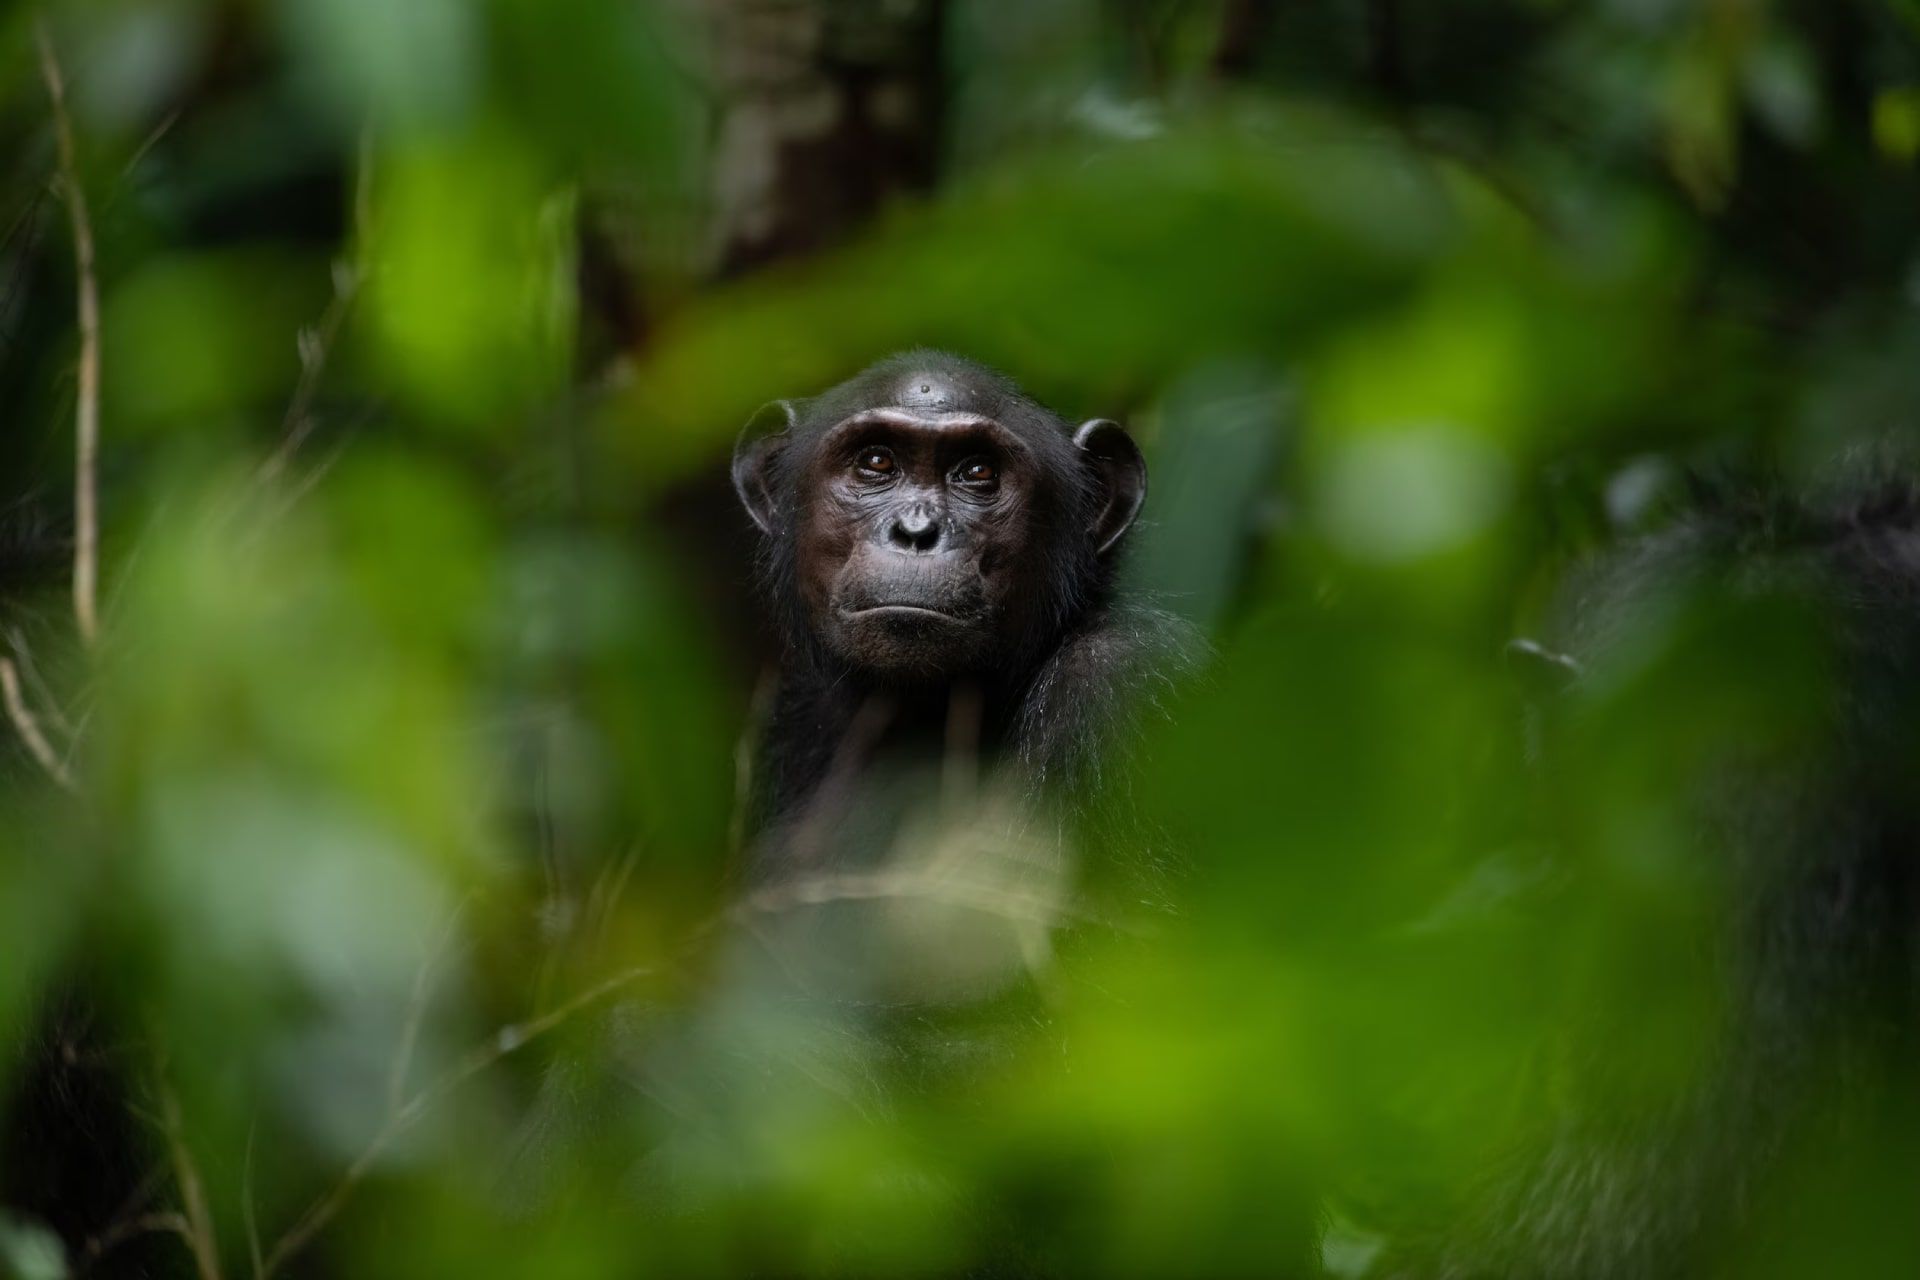 سر شامپانزه در میان گیاهان در پارک ملی لوانگو گابن آفریقا